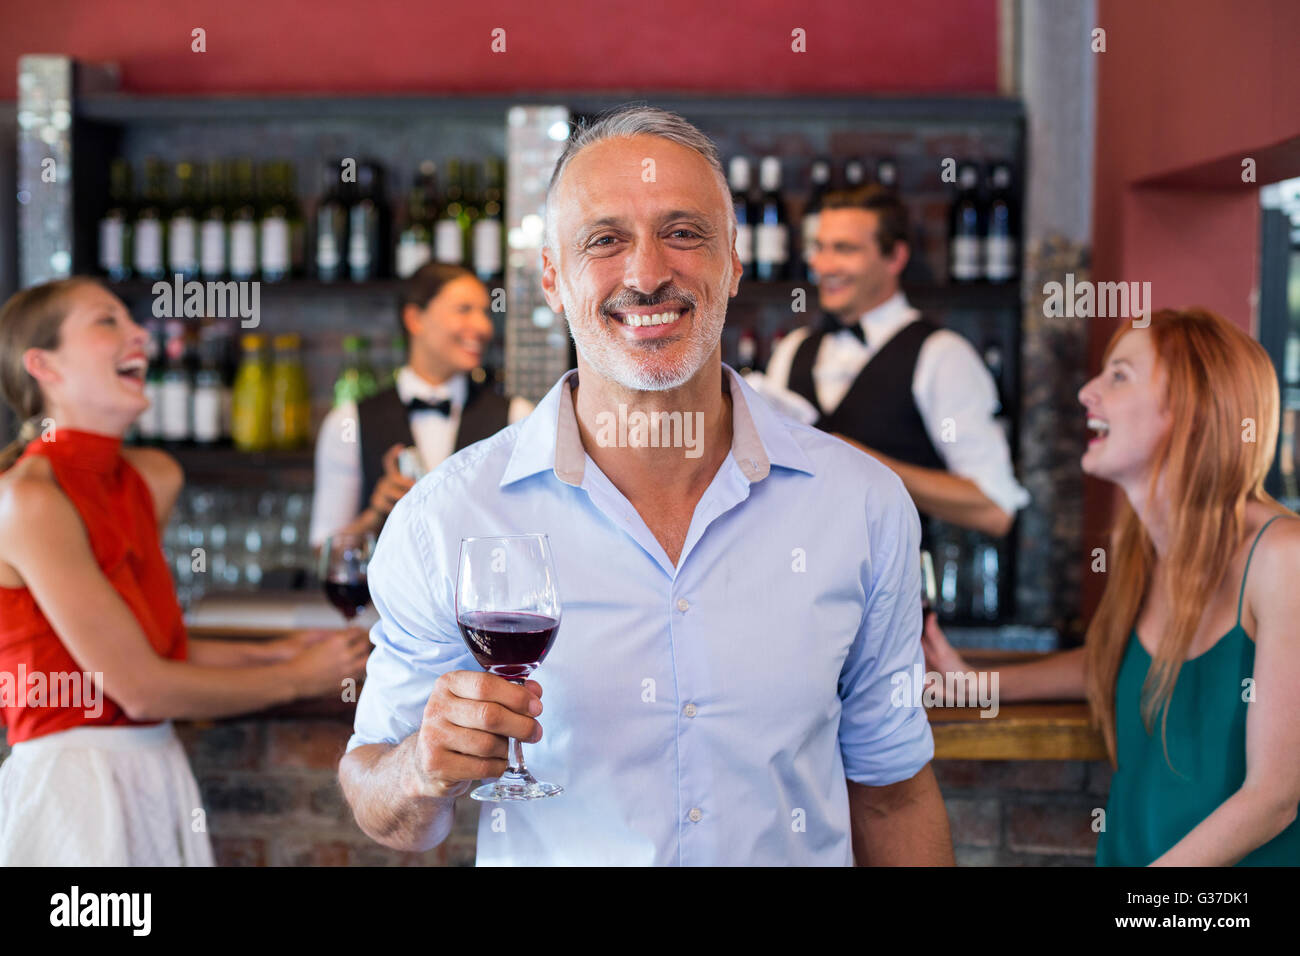 Ritratto di uomo con un bicchiere di vino davanti al bancone bar Foto Stock